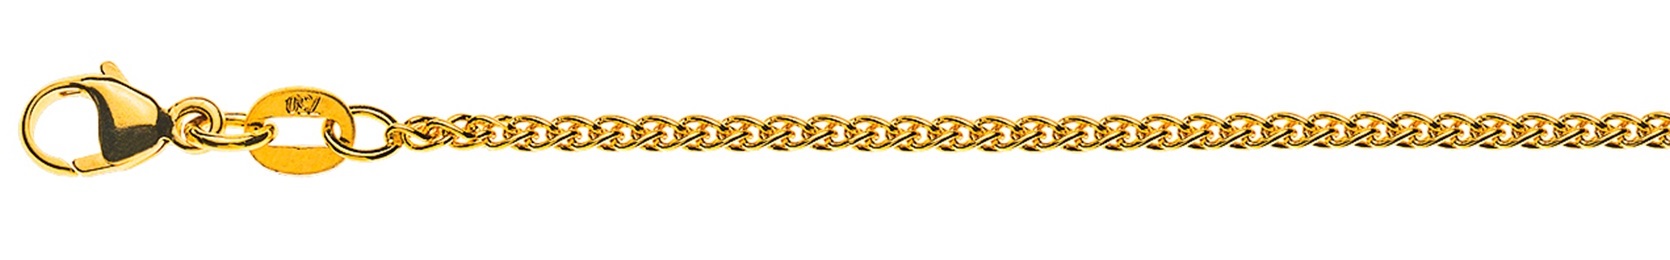 AURONOS Élégance Halskette Gelbgold 14K Zopfkette 38cm 1.6mm